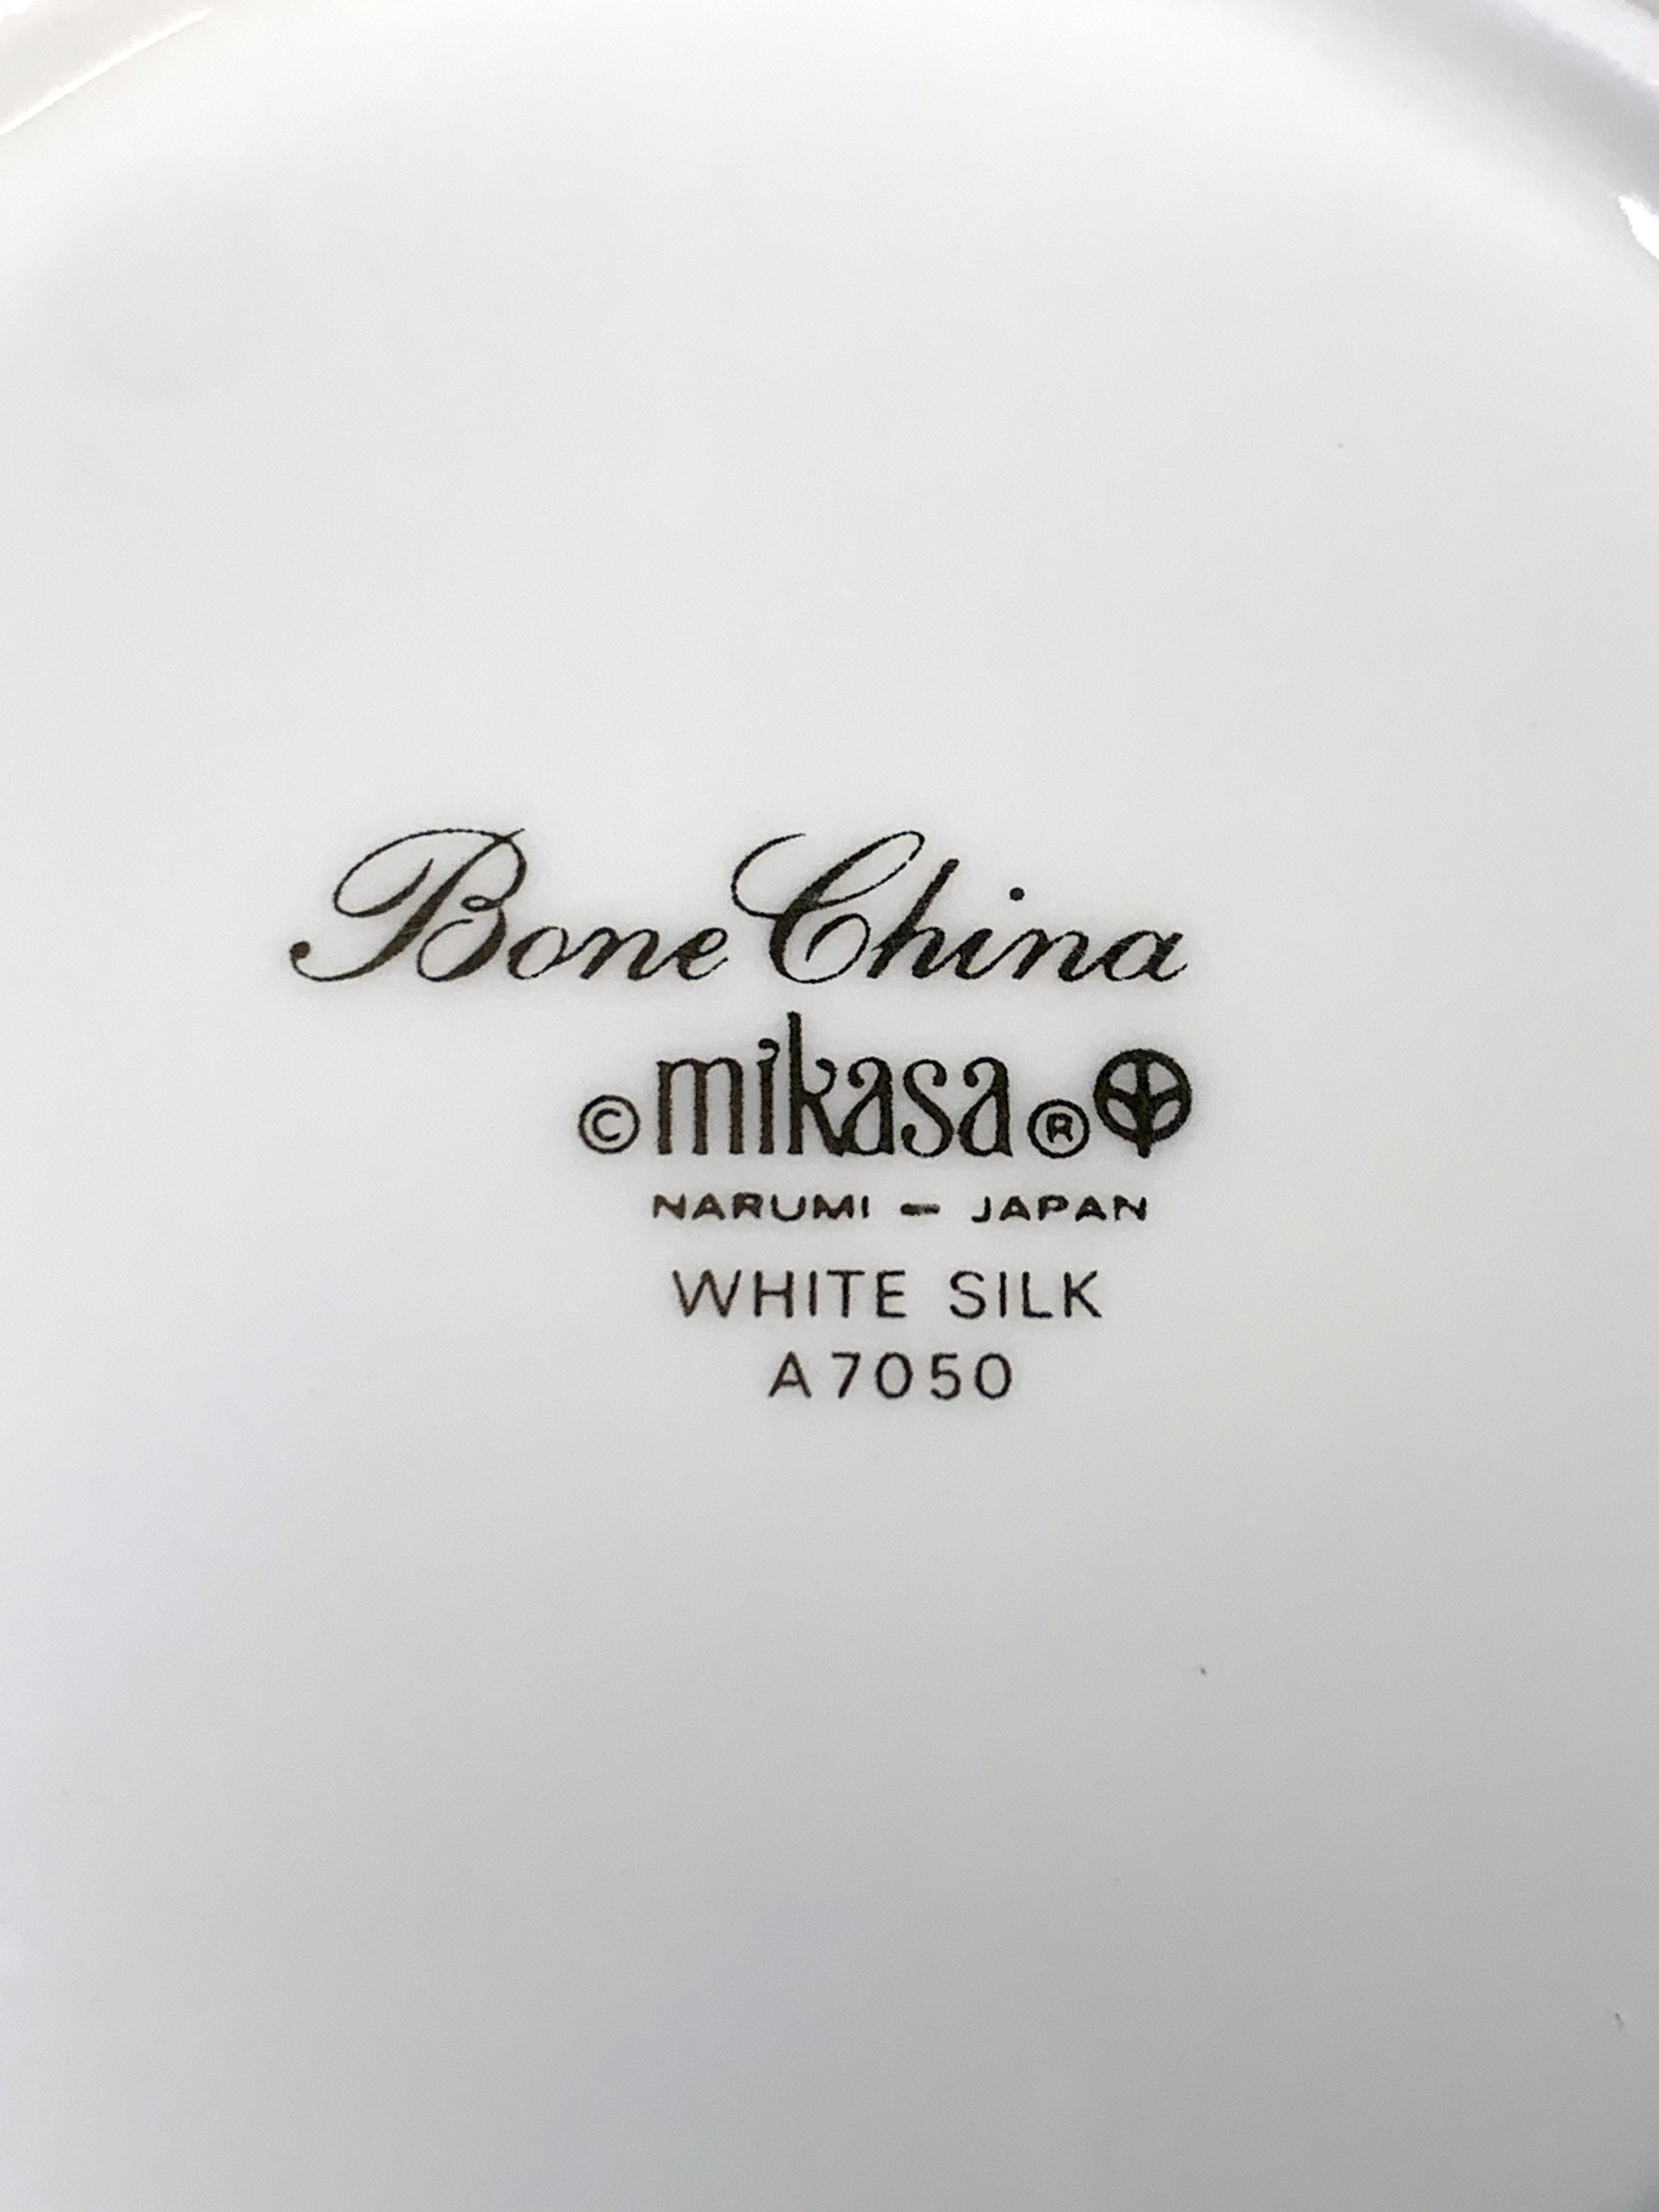 Mikasa Bone China White Silk image 4